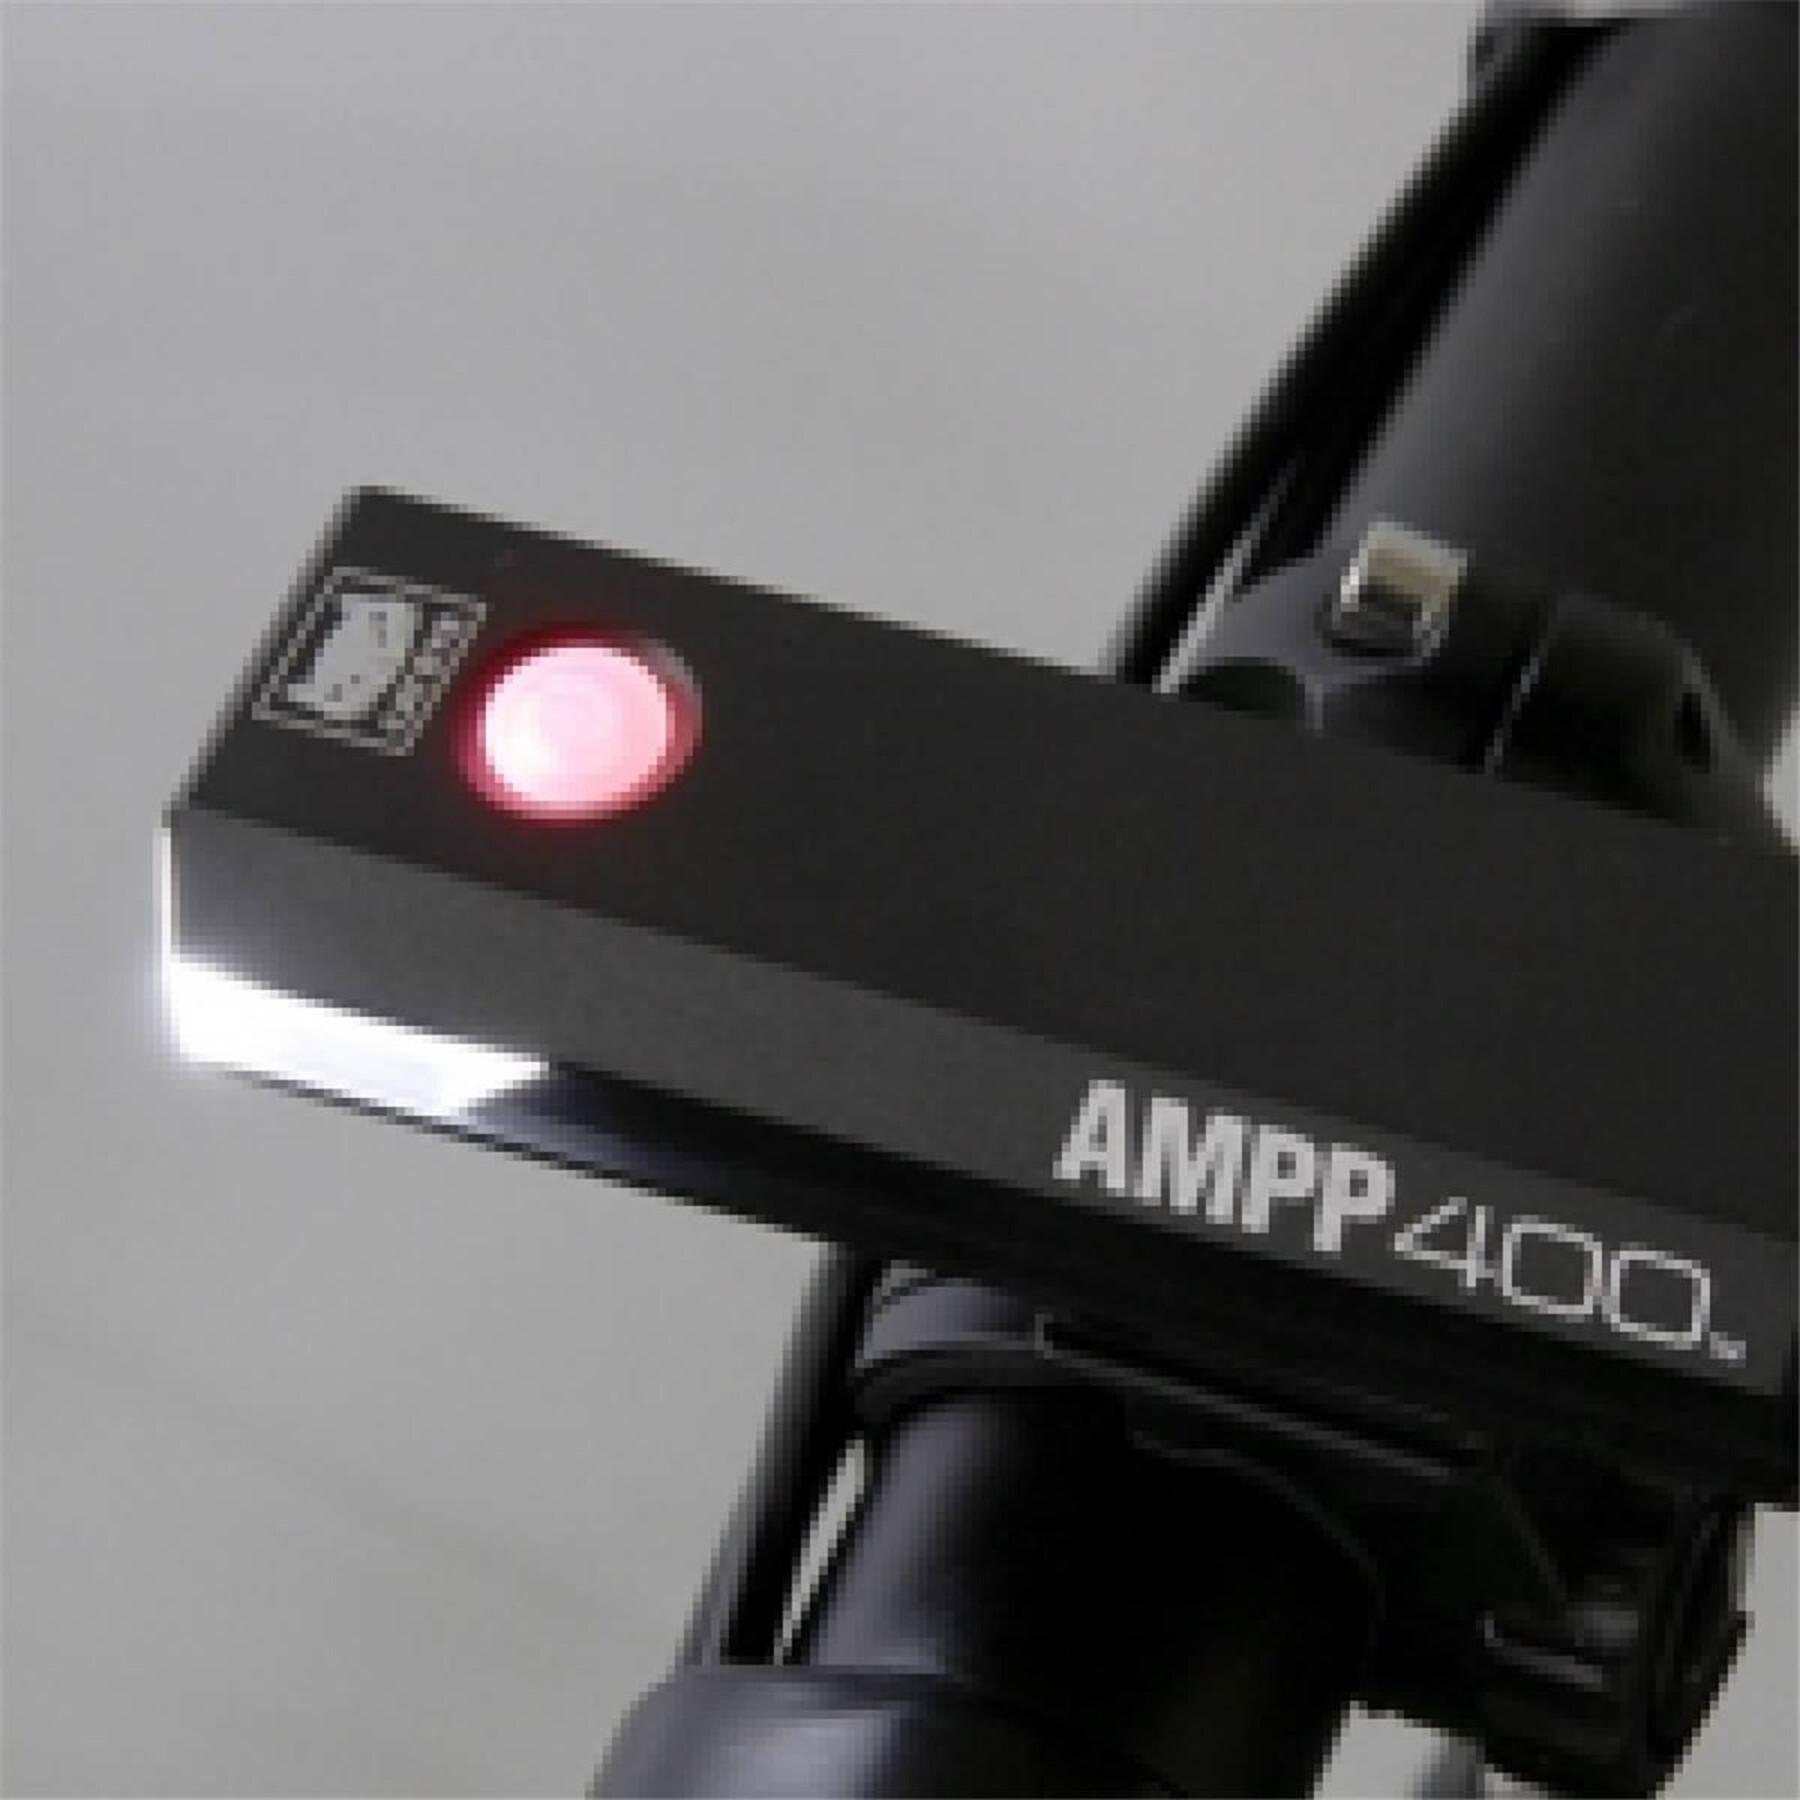 Fahrrad Lichterset Cateye Ampp 400 & Vip 140